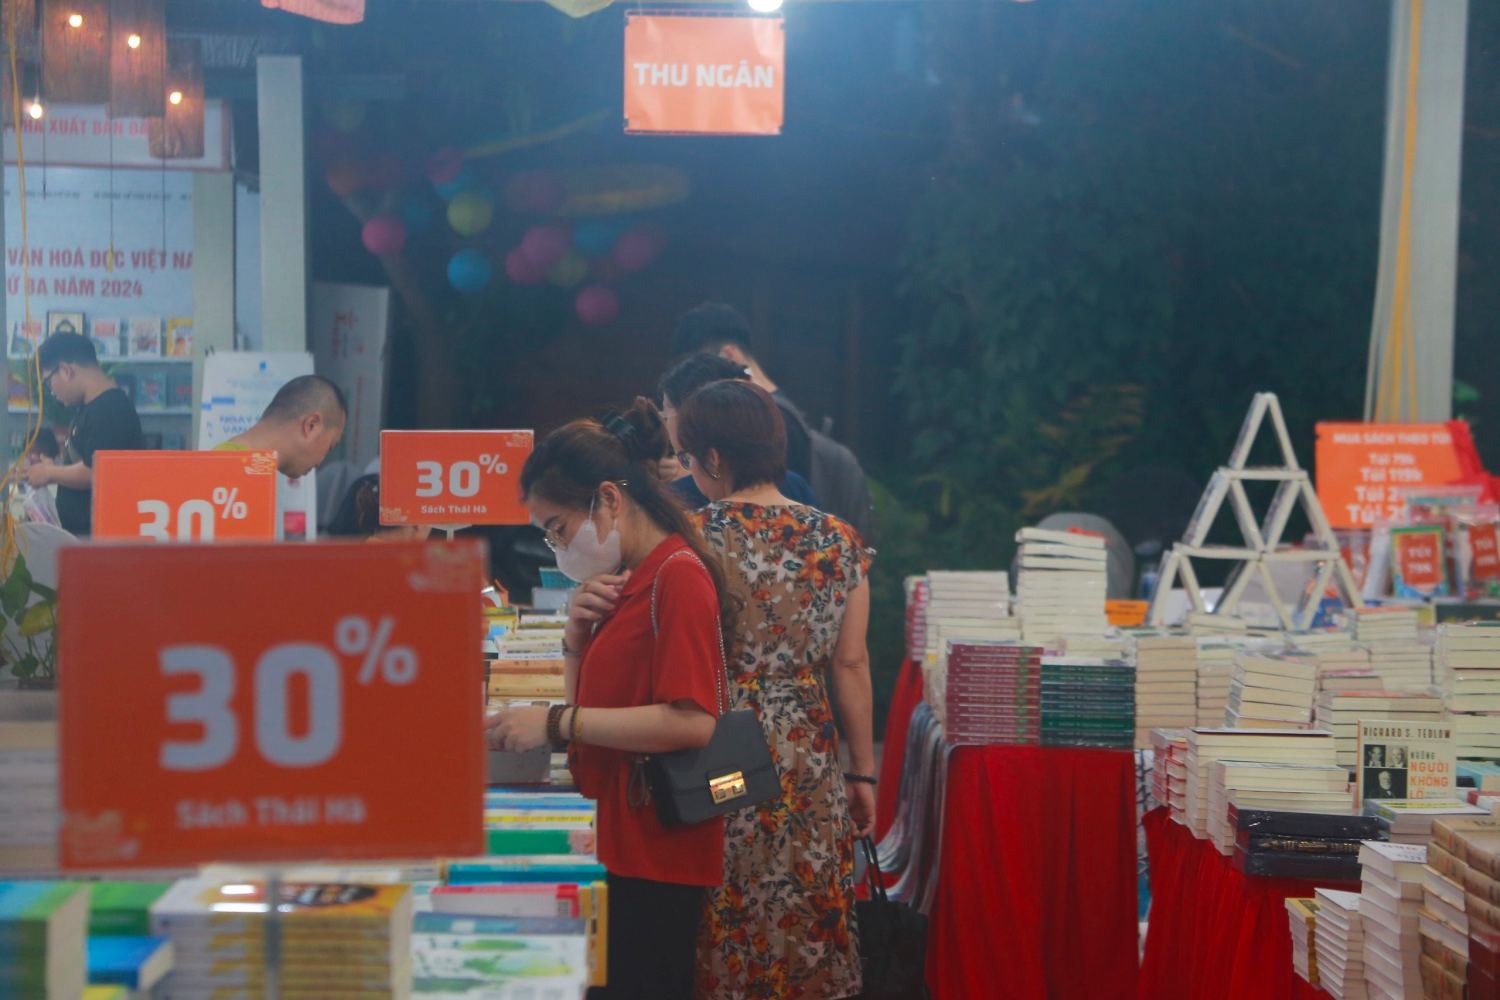 Trong buổi tối đầu tiên, đã có rất nhiều người dân đến hội chợ sách tìm mua, thăm quan khuôn viên. Ảnh: Thùy Trang